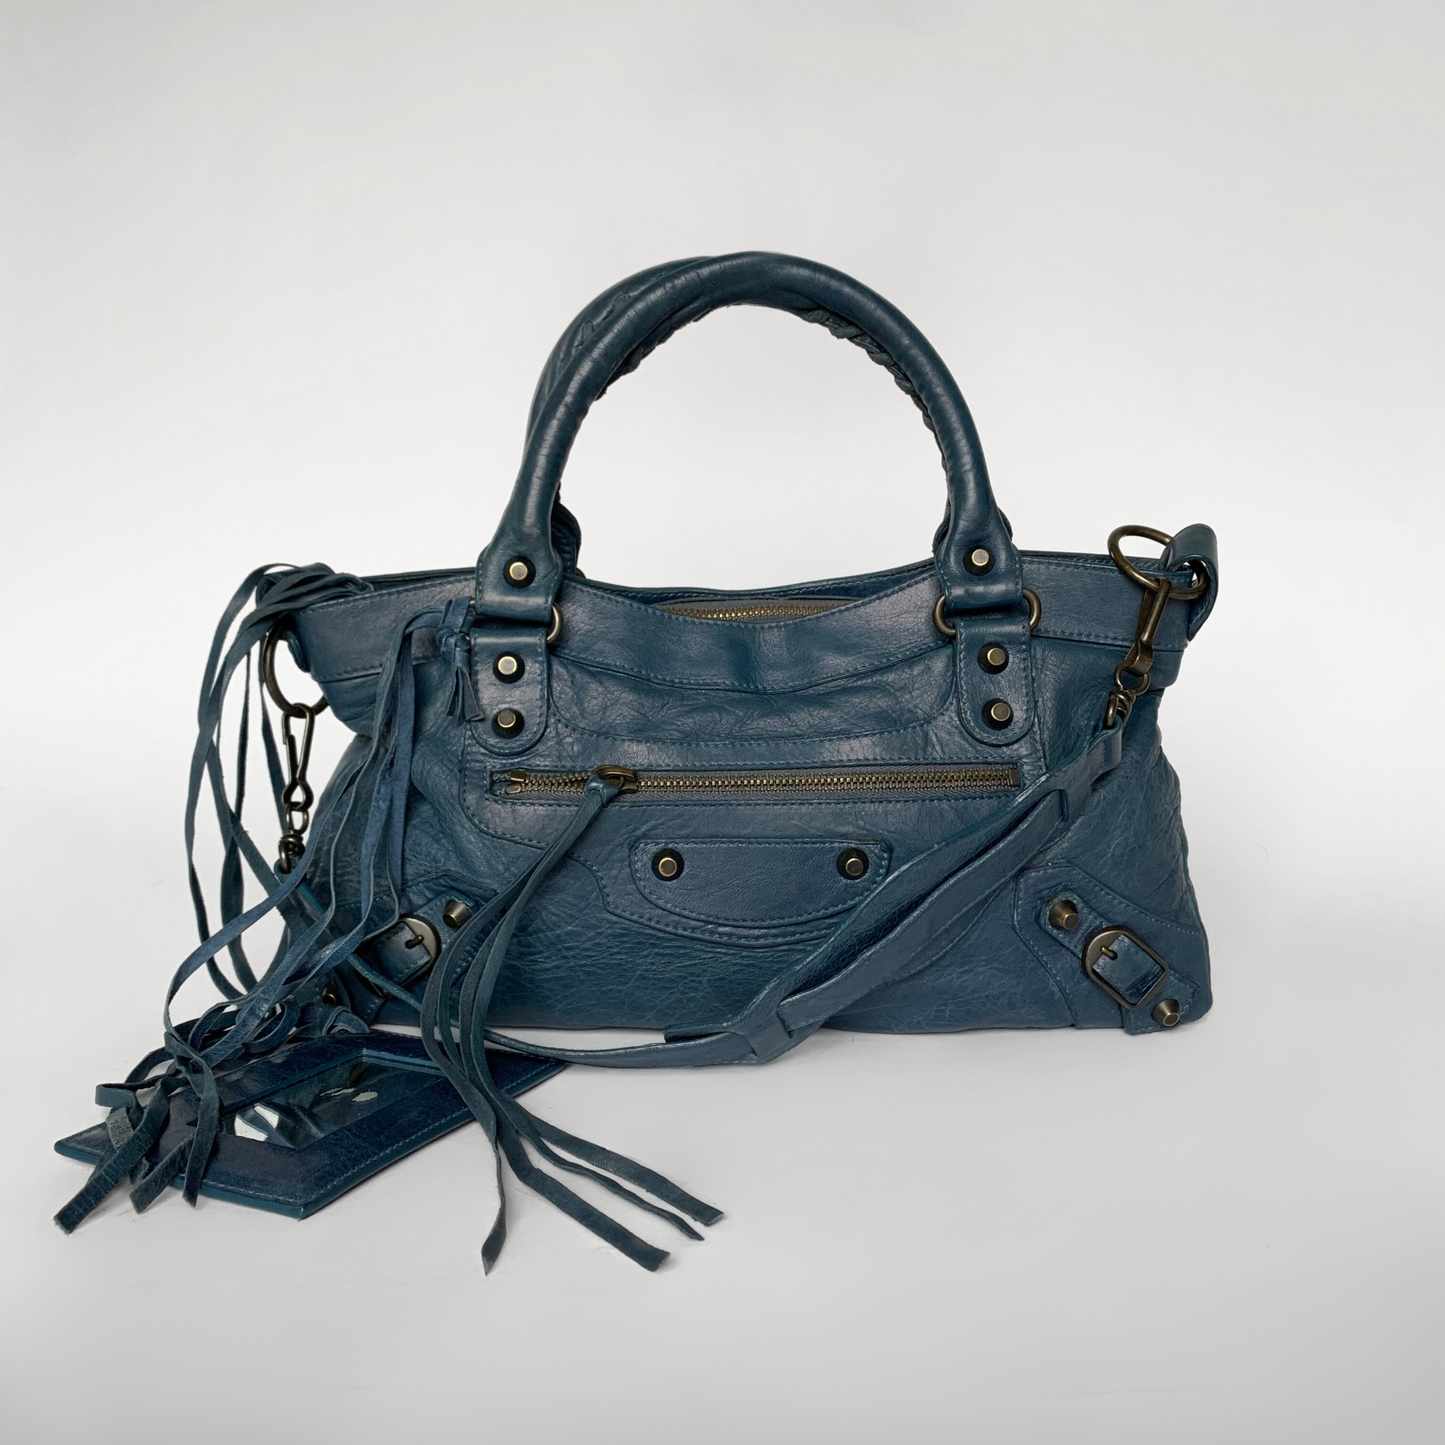 Balenciaga Balenciaga Ensimmäinen laukku nahka - käsilaukku - Etoile Luxury Vintage